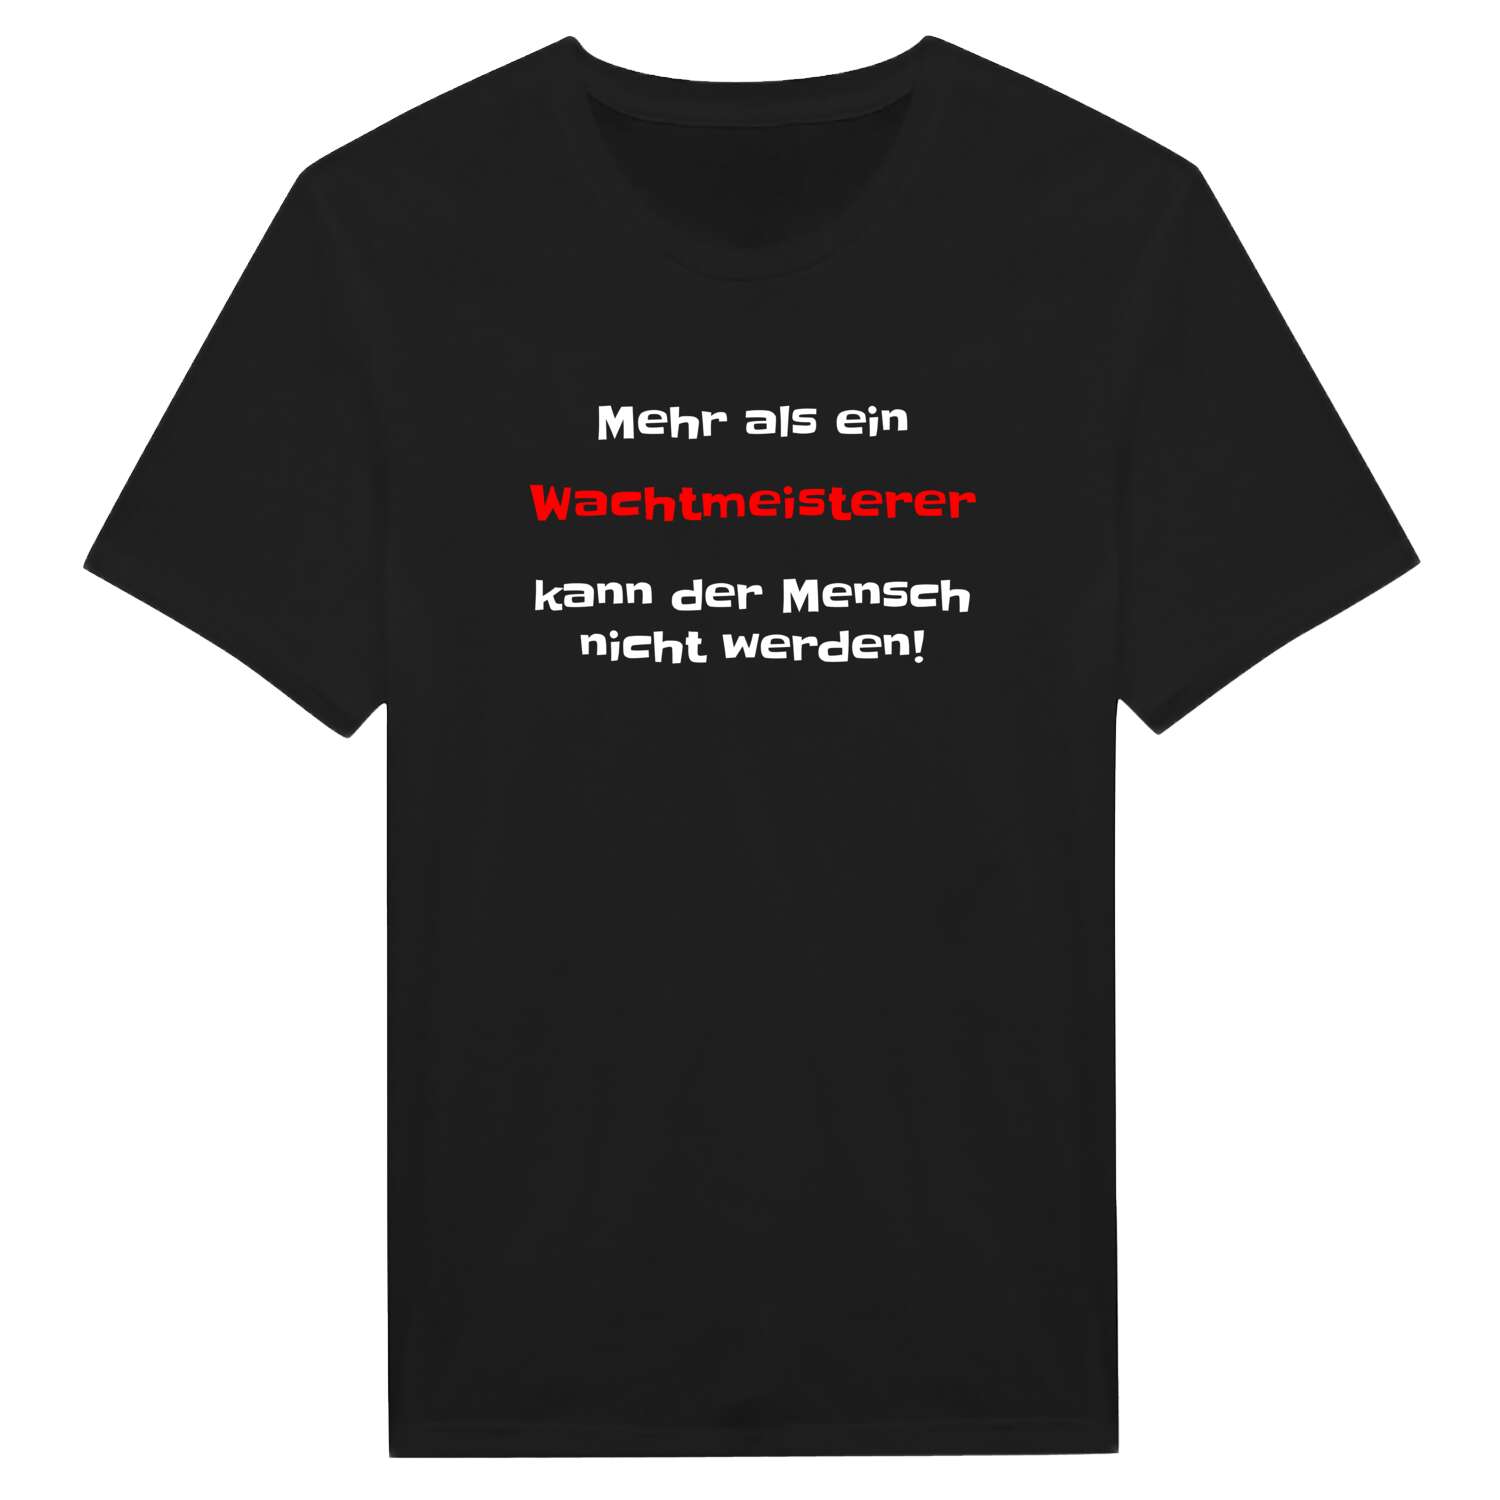 Wachtmeister T-Shirt »Mehr als ein«